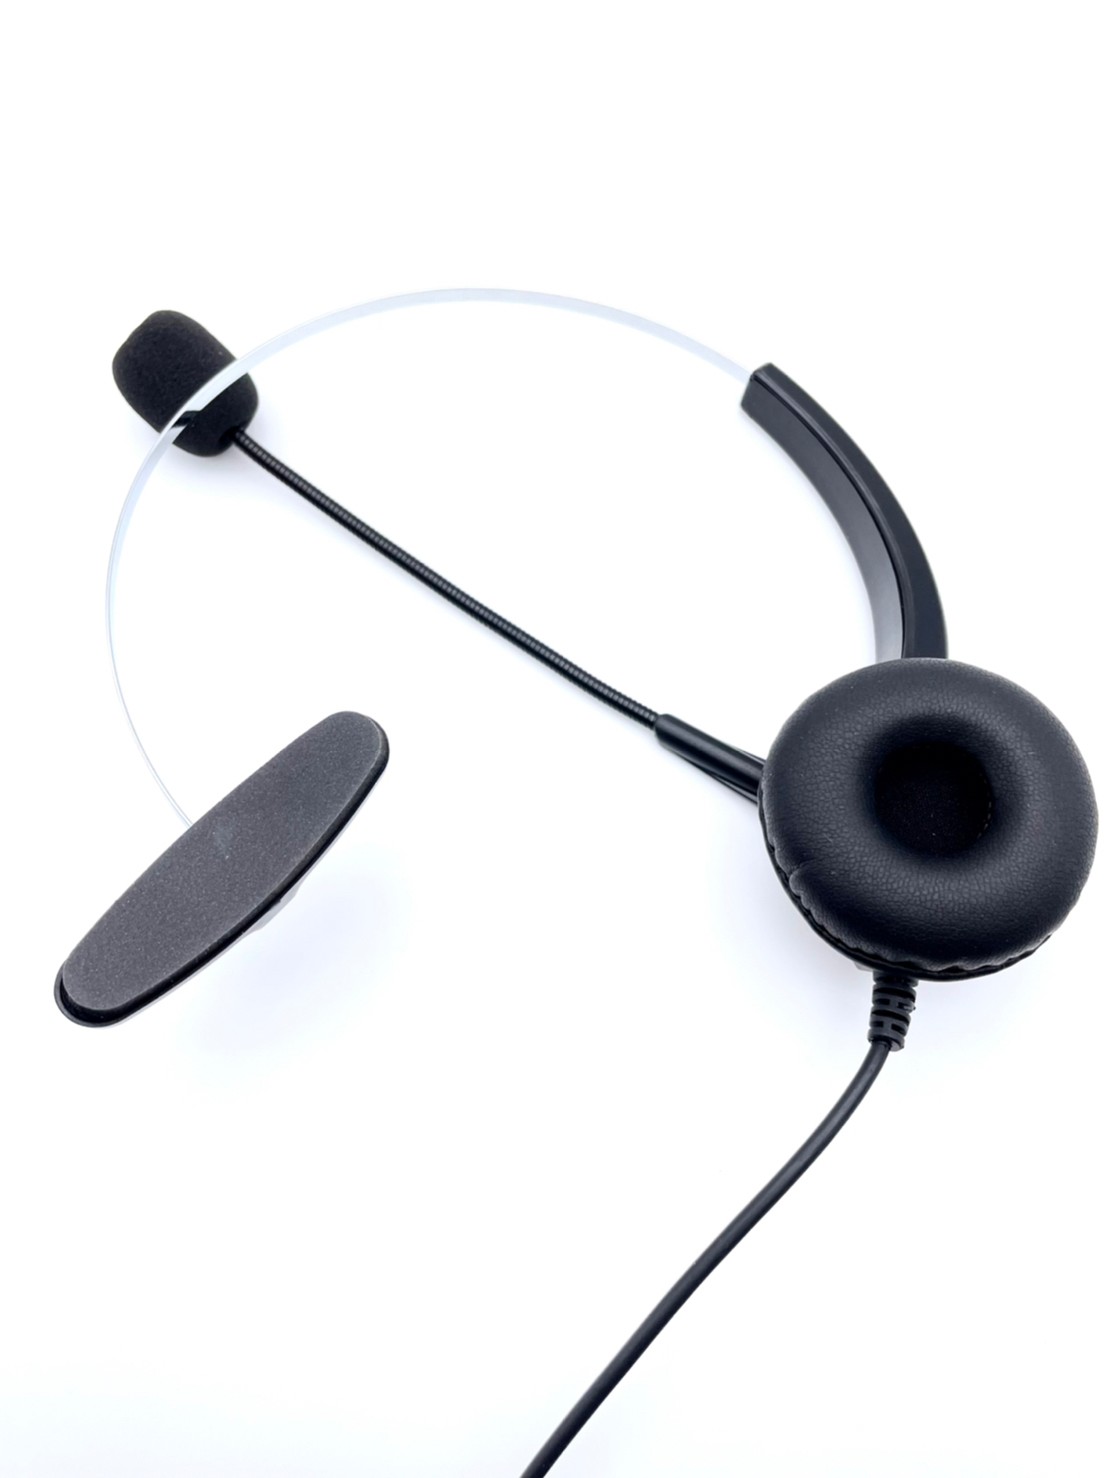 FHS103瑞通電話使用降噪電話耳機 專業降噪電話耳機麥克風配高級耳罩海綿 真正降噪抗噪耳機單指向麥克